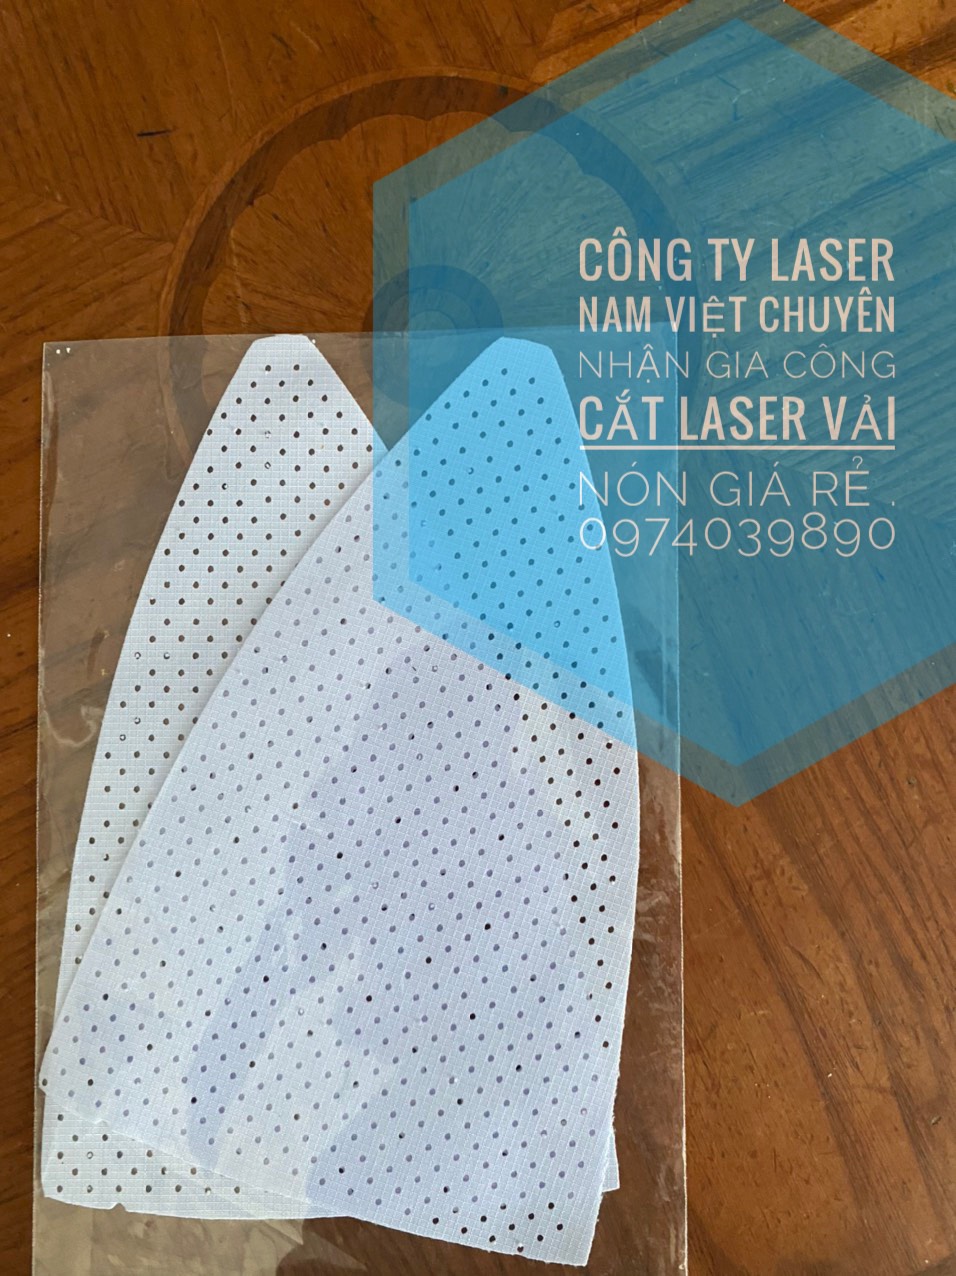 NHẬN GIA CÔNG ĐỤC LỖ VẢI NÓN, cắt laser trên vải